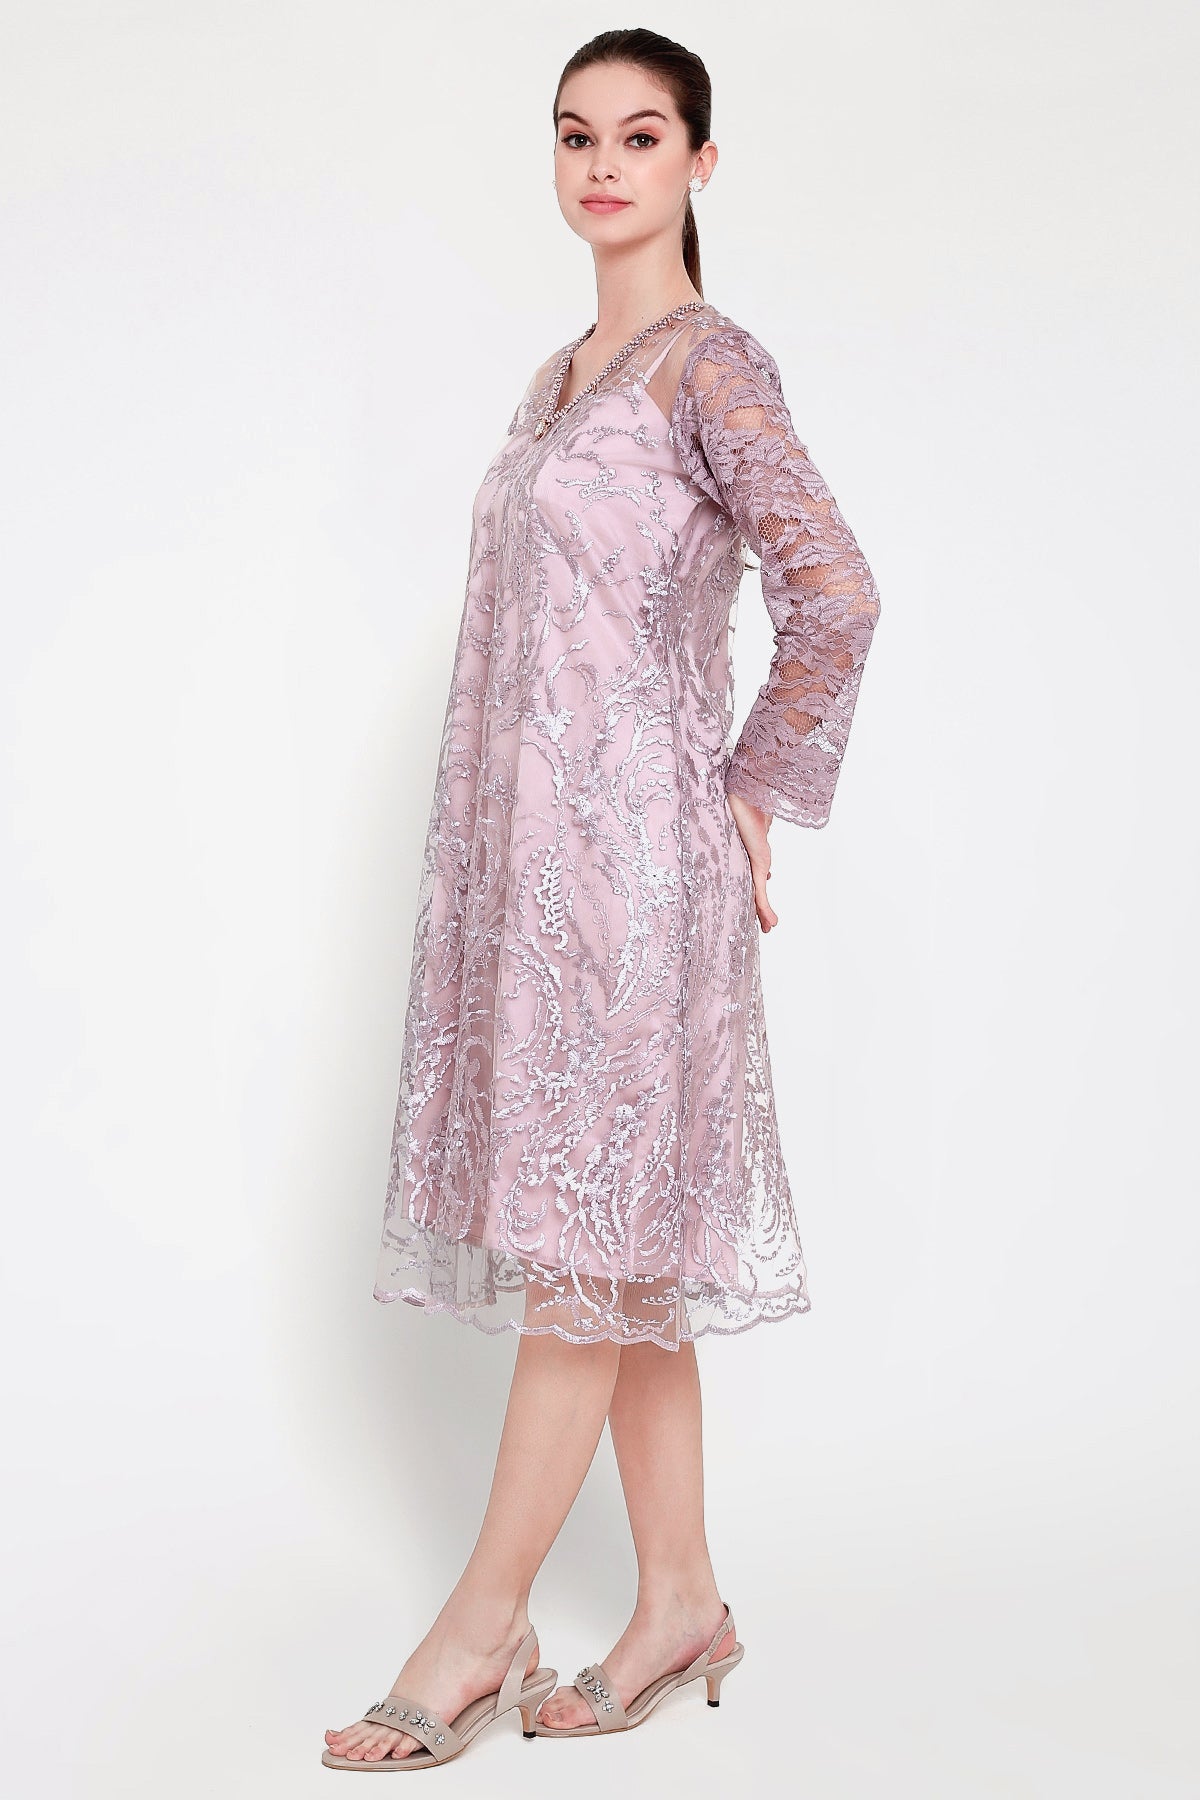 Gavrila Dress in Soft Lavender